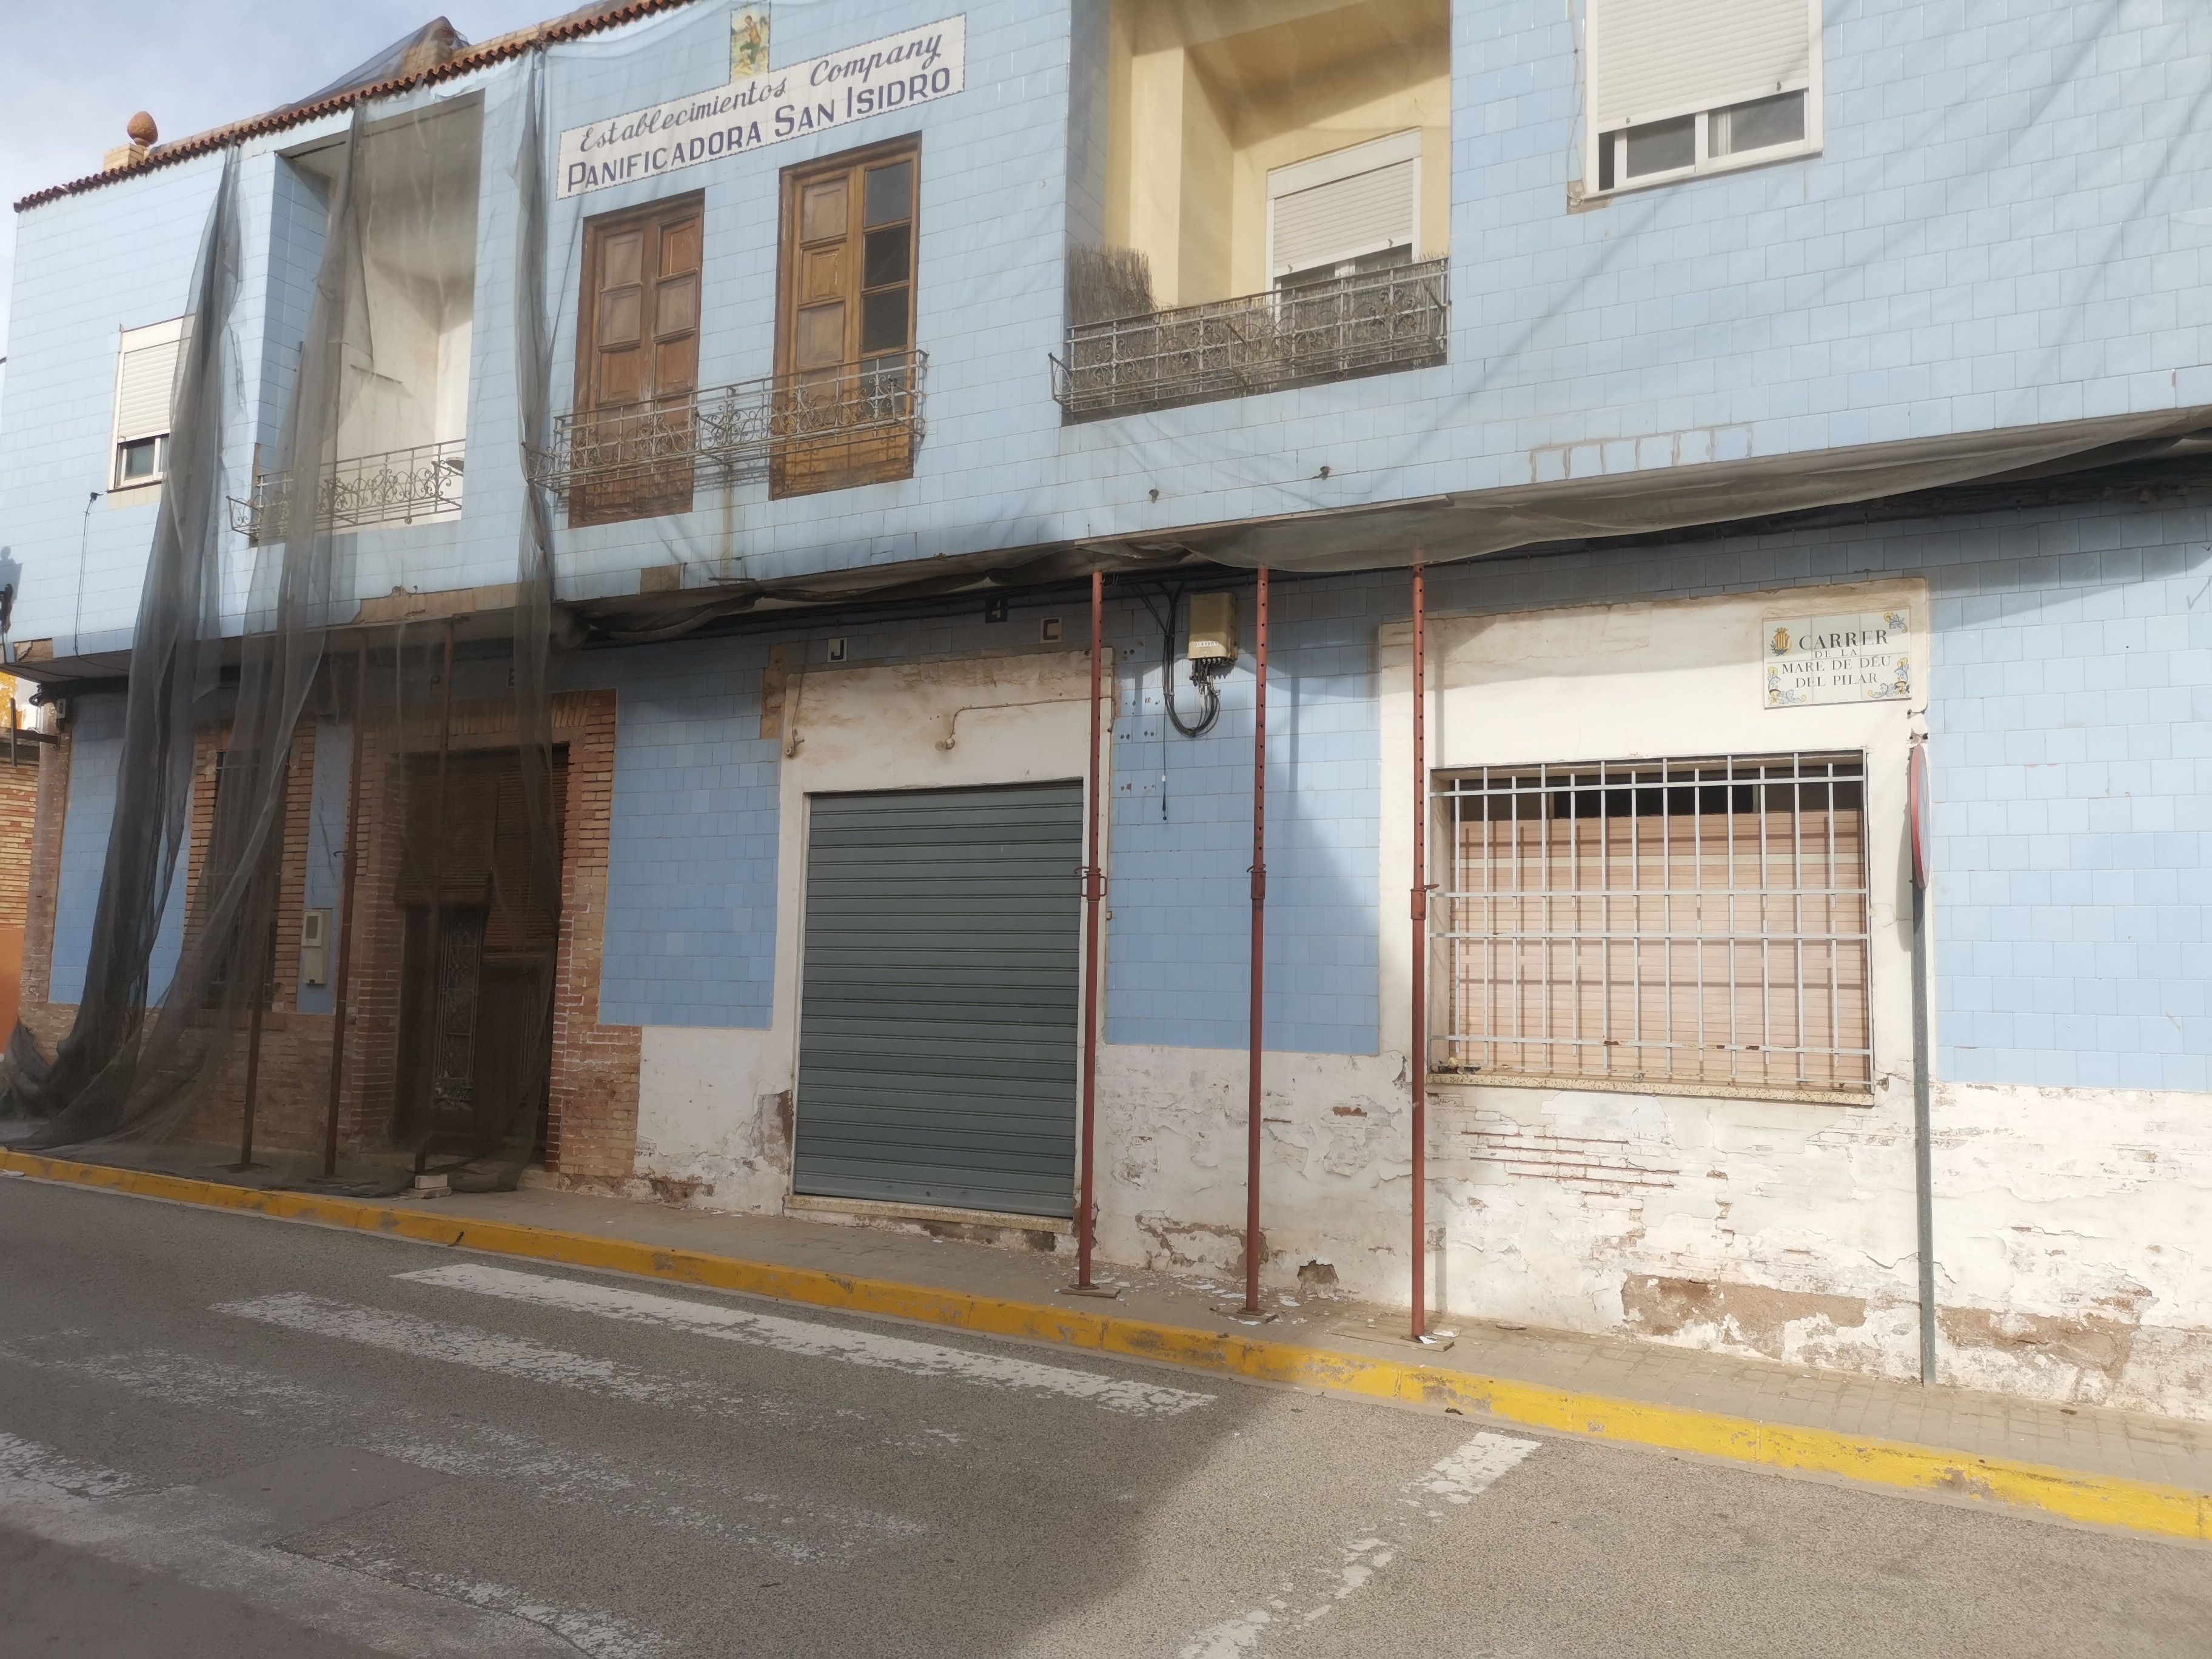 Cartera de segunda mano por 12 EUR en Cartagena en WALLAPOP